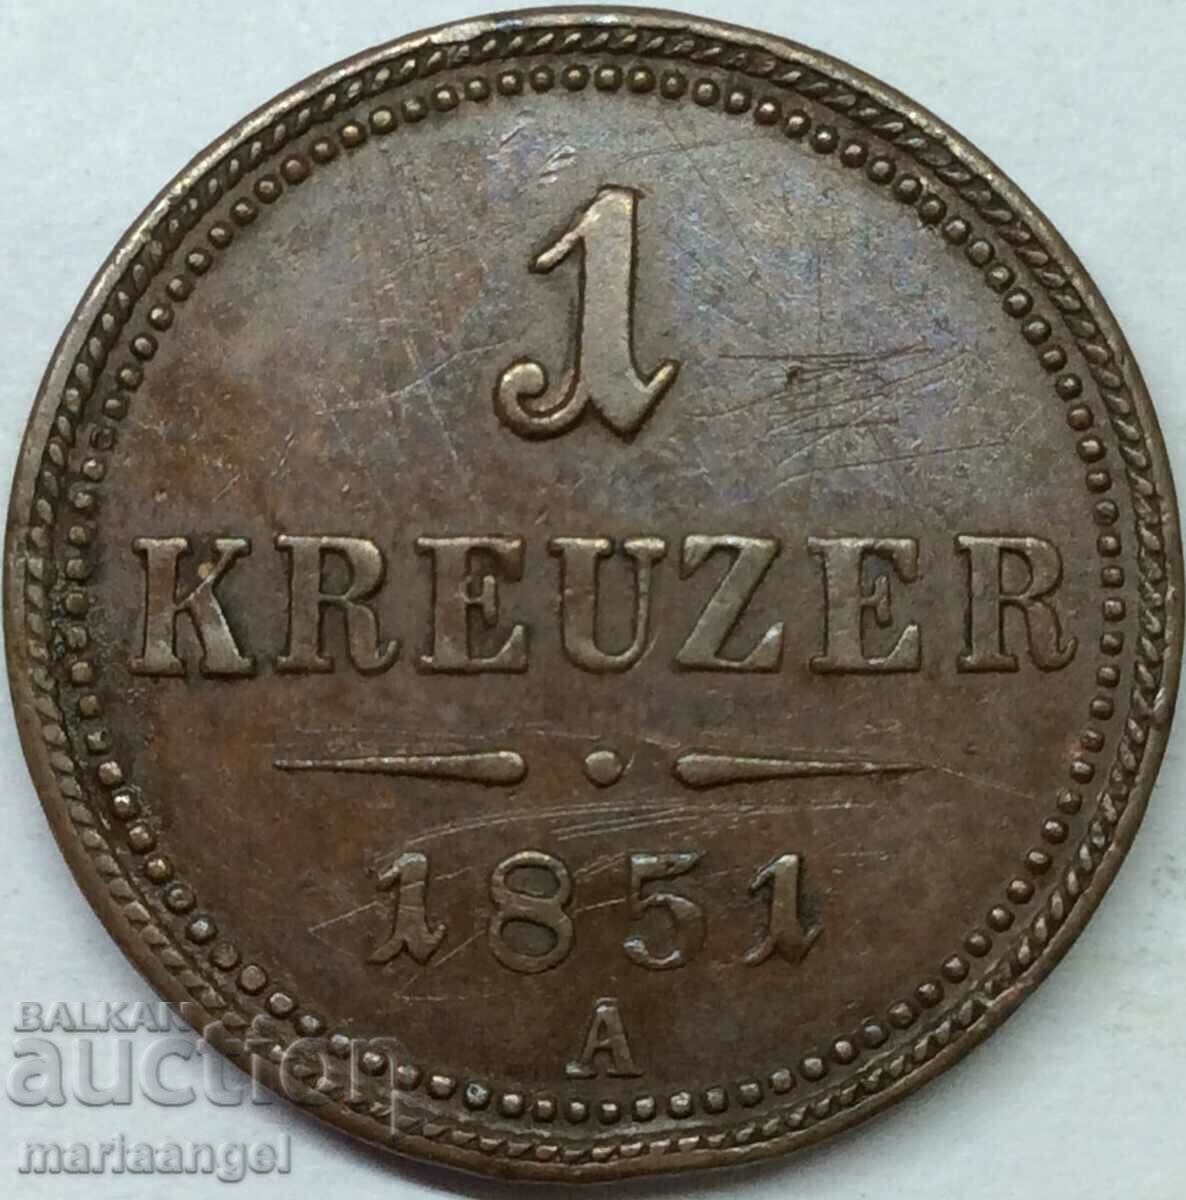 1 кройцер 1851 Австрия В - Кремнитц